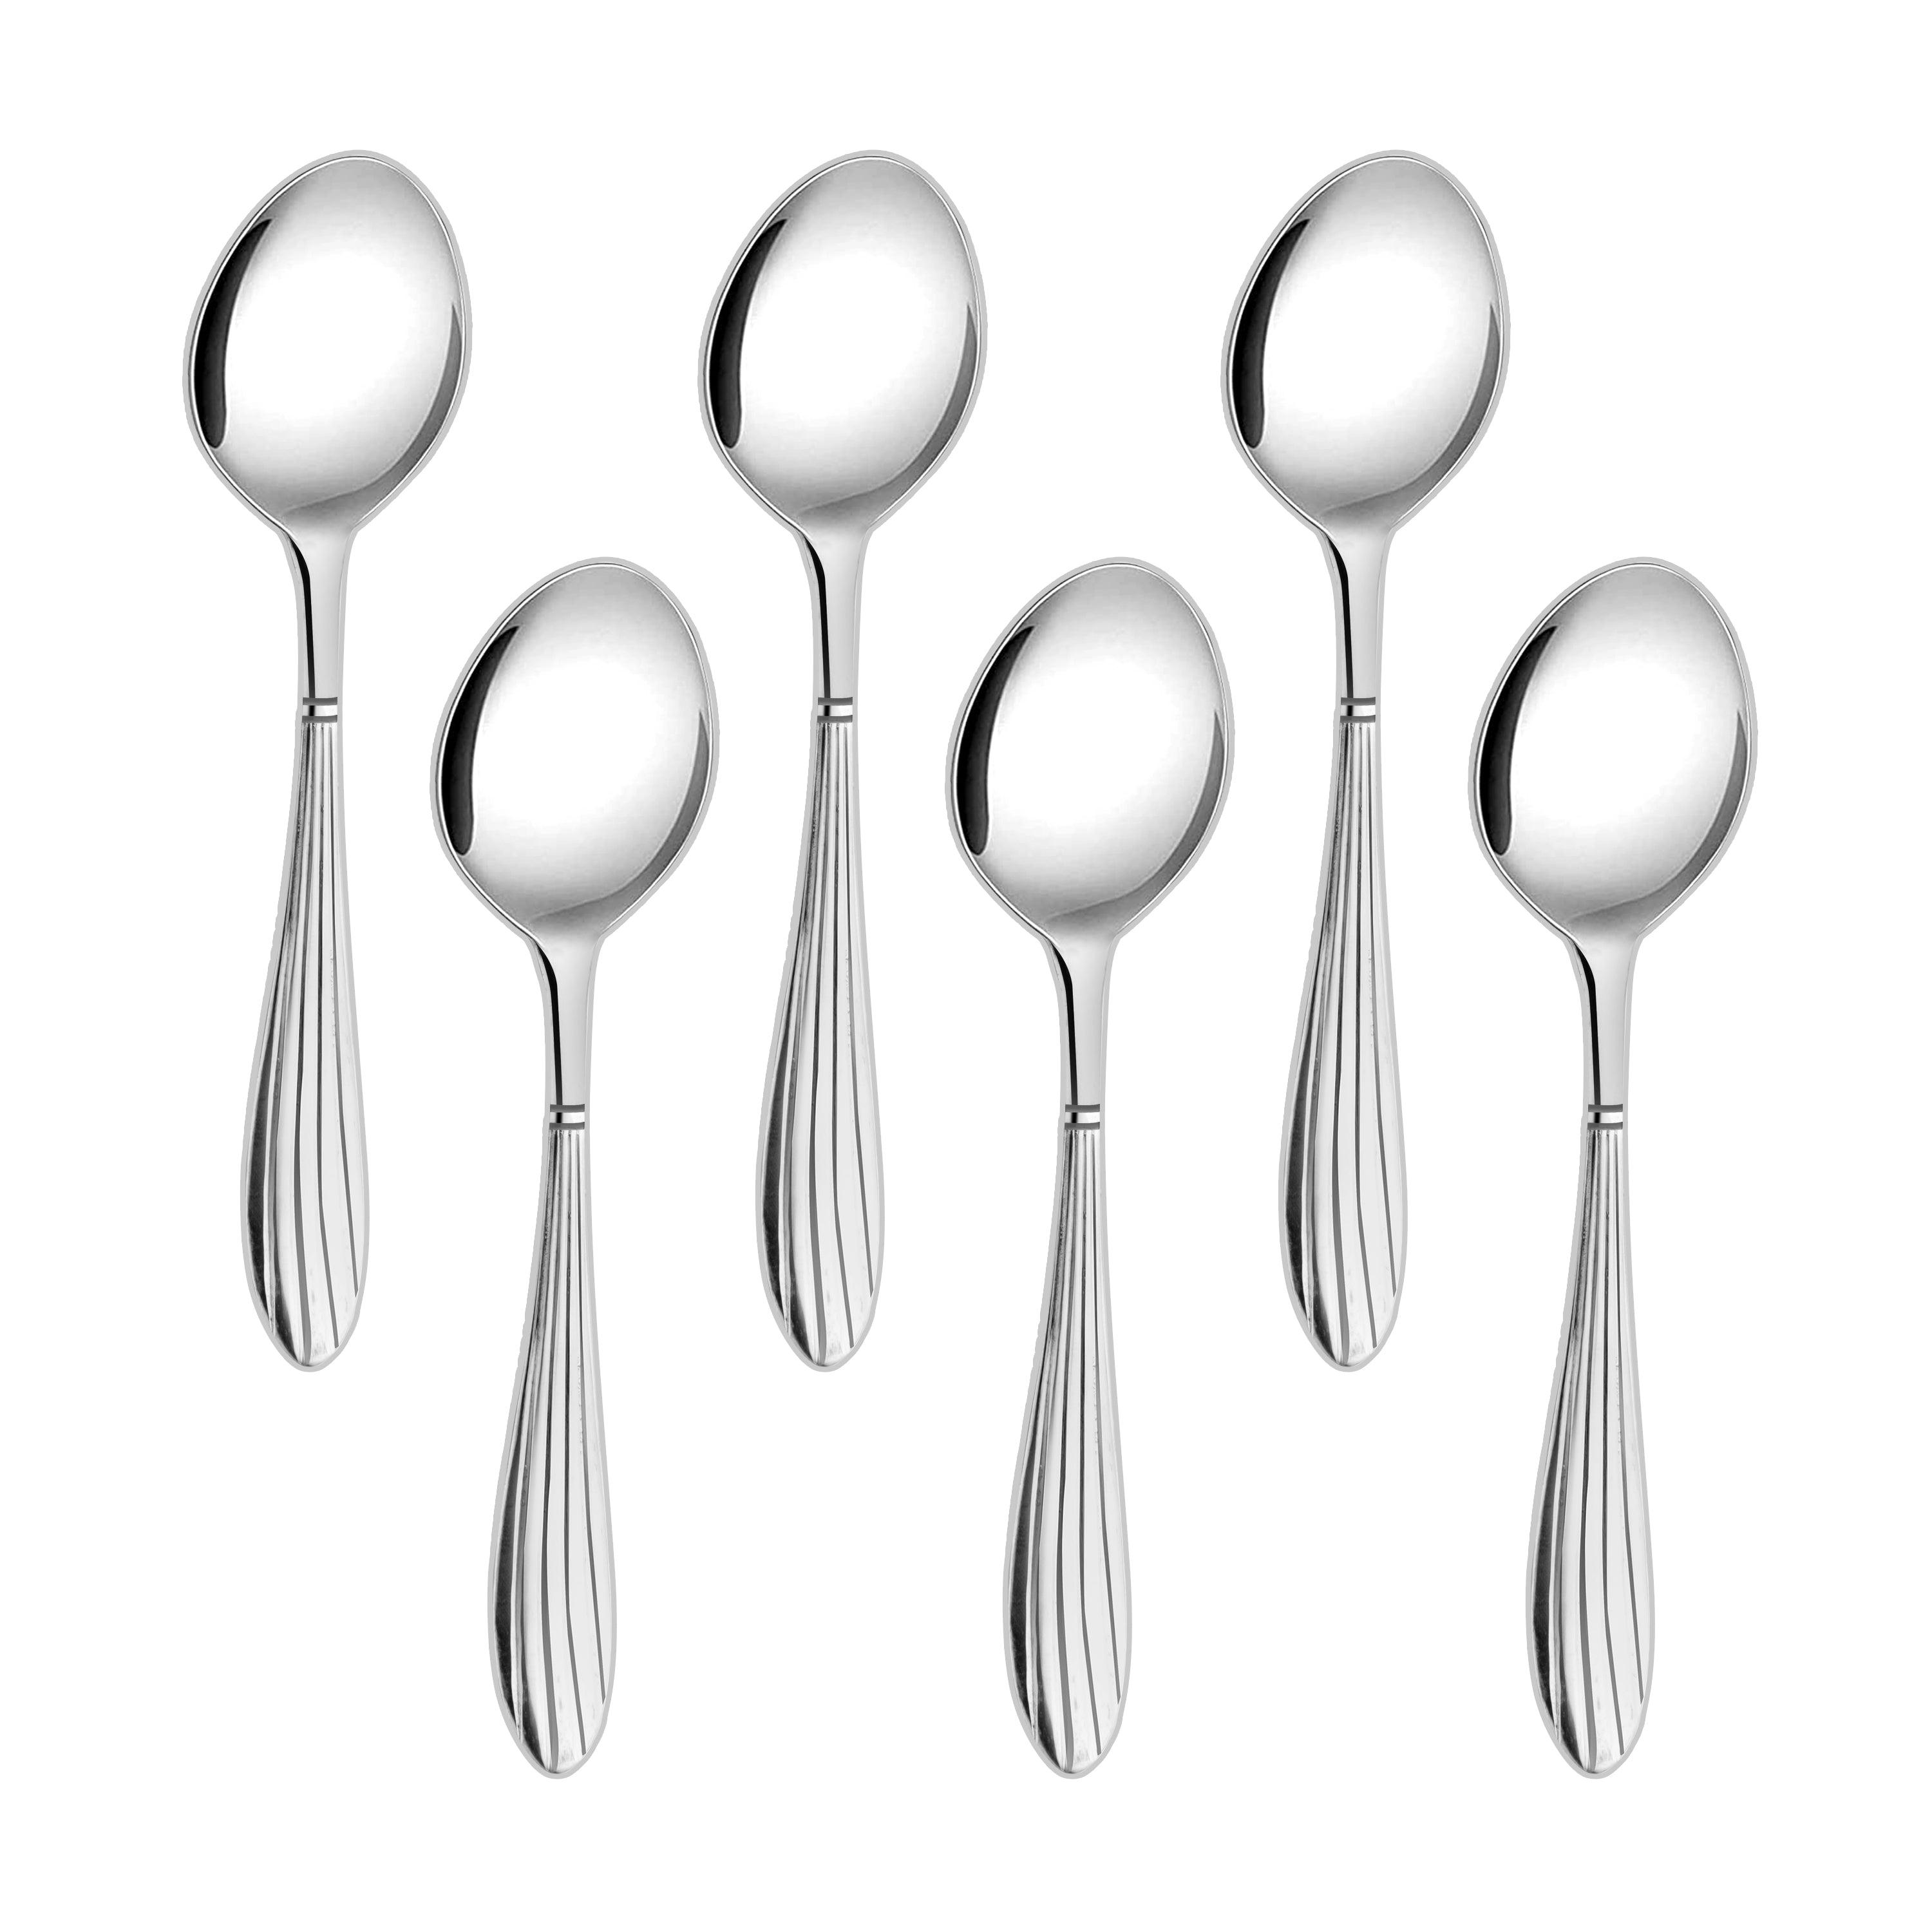 Arias Sysco Baby Spoon Set of 6 (Silver)